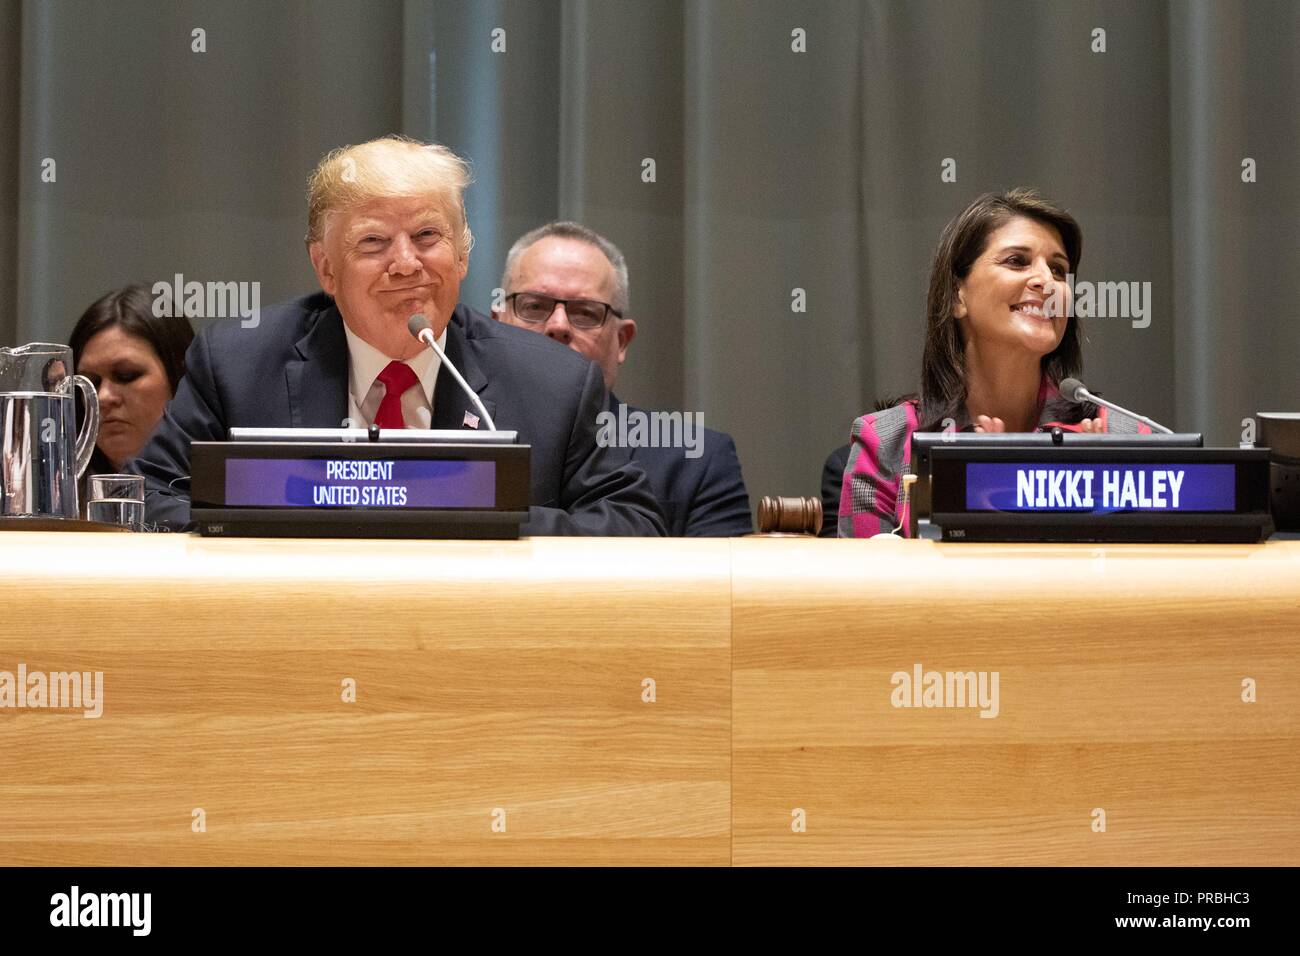 Us-Präsident Donald Trump und UN-Botschafter Nikki Haley in einem Weltweiten Aufruf zur Aktion zum Drogenproblem am Hauptsitz der Vereinten Nationen September 24, 2018 in New York City, New York, teil. Stockfoto